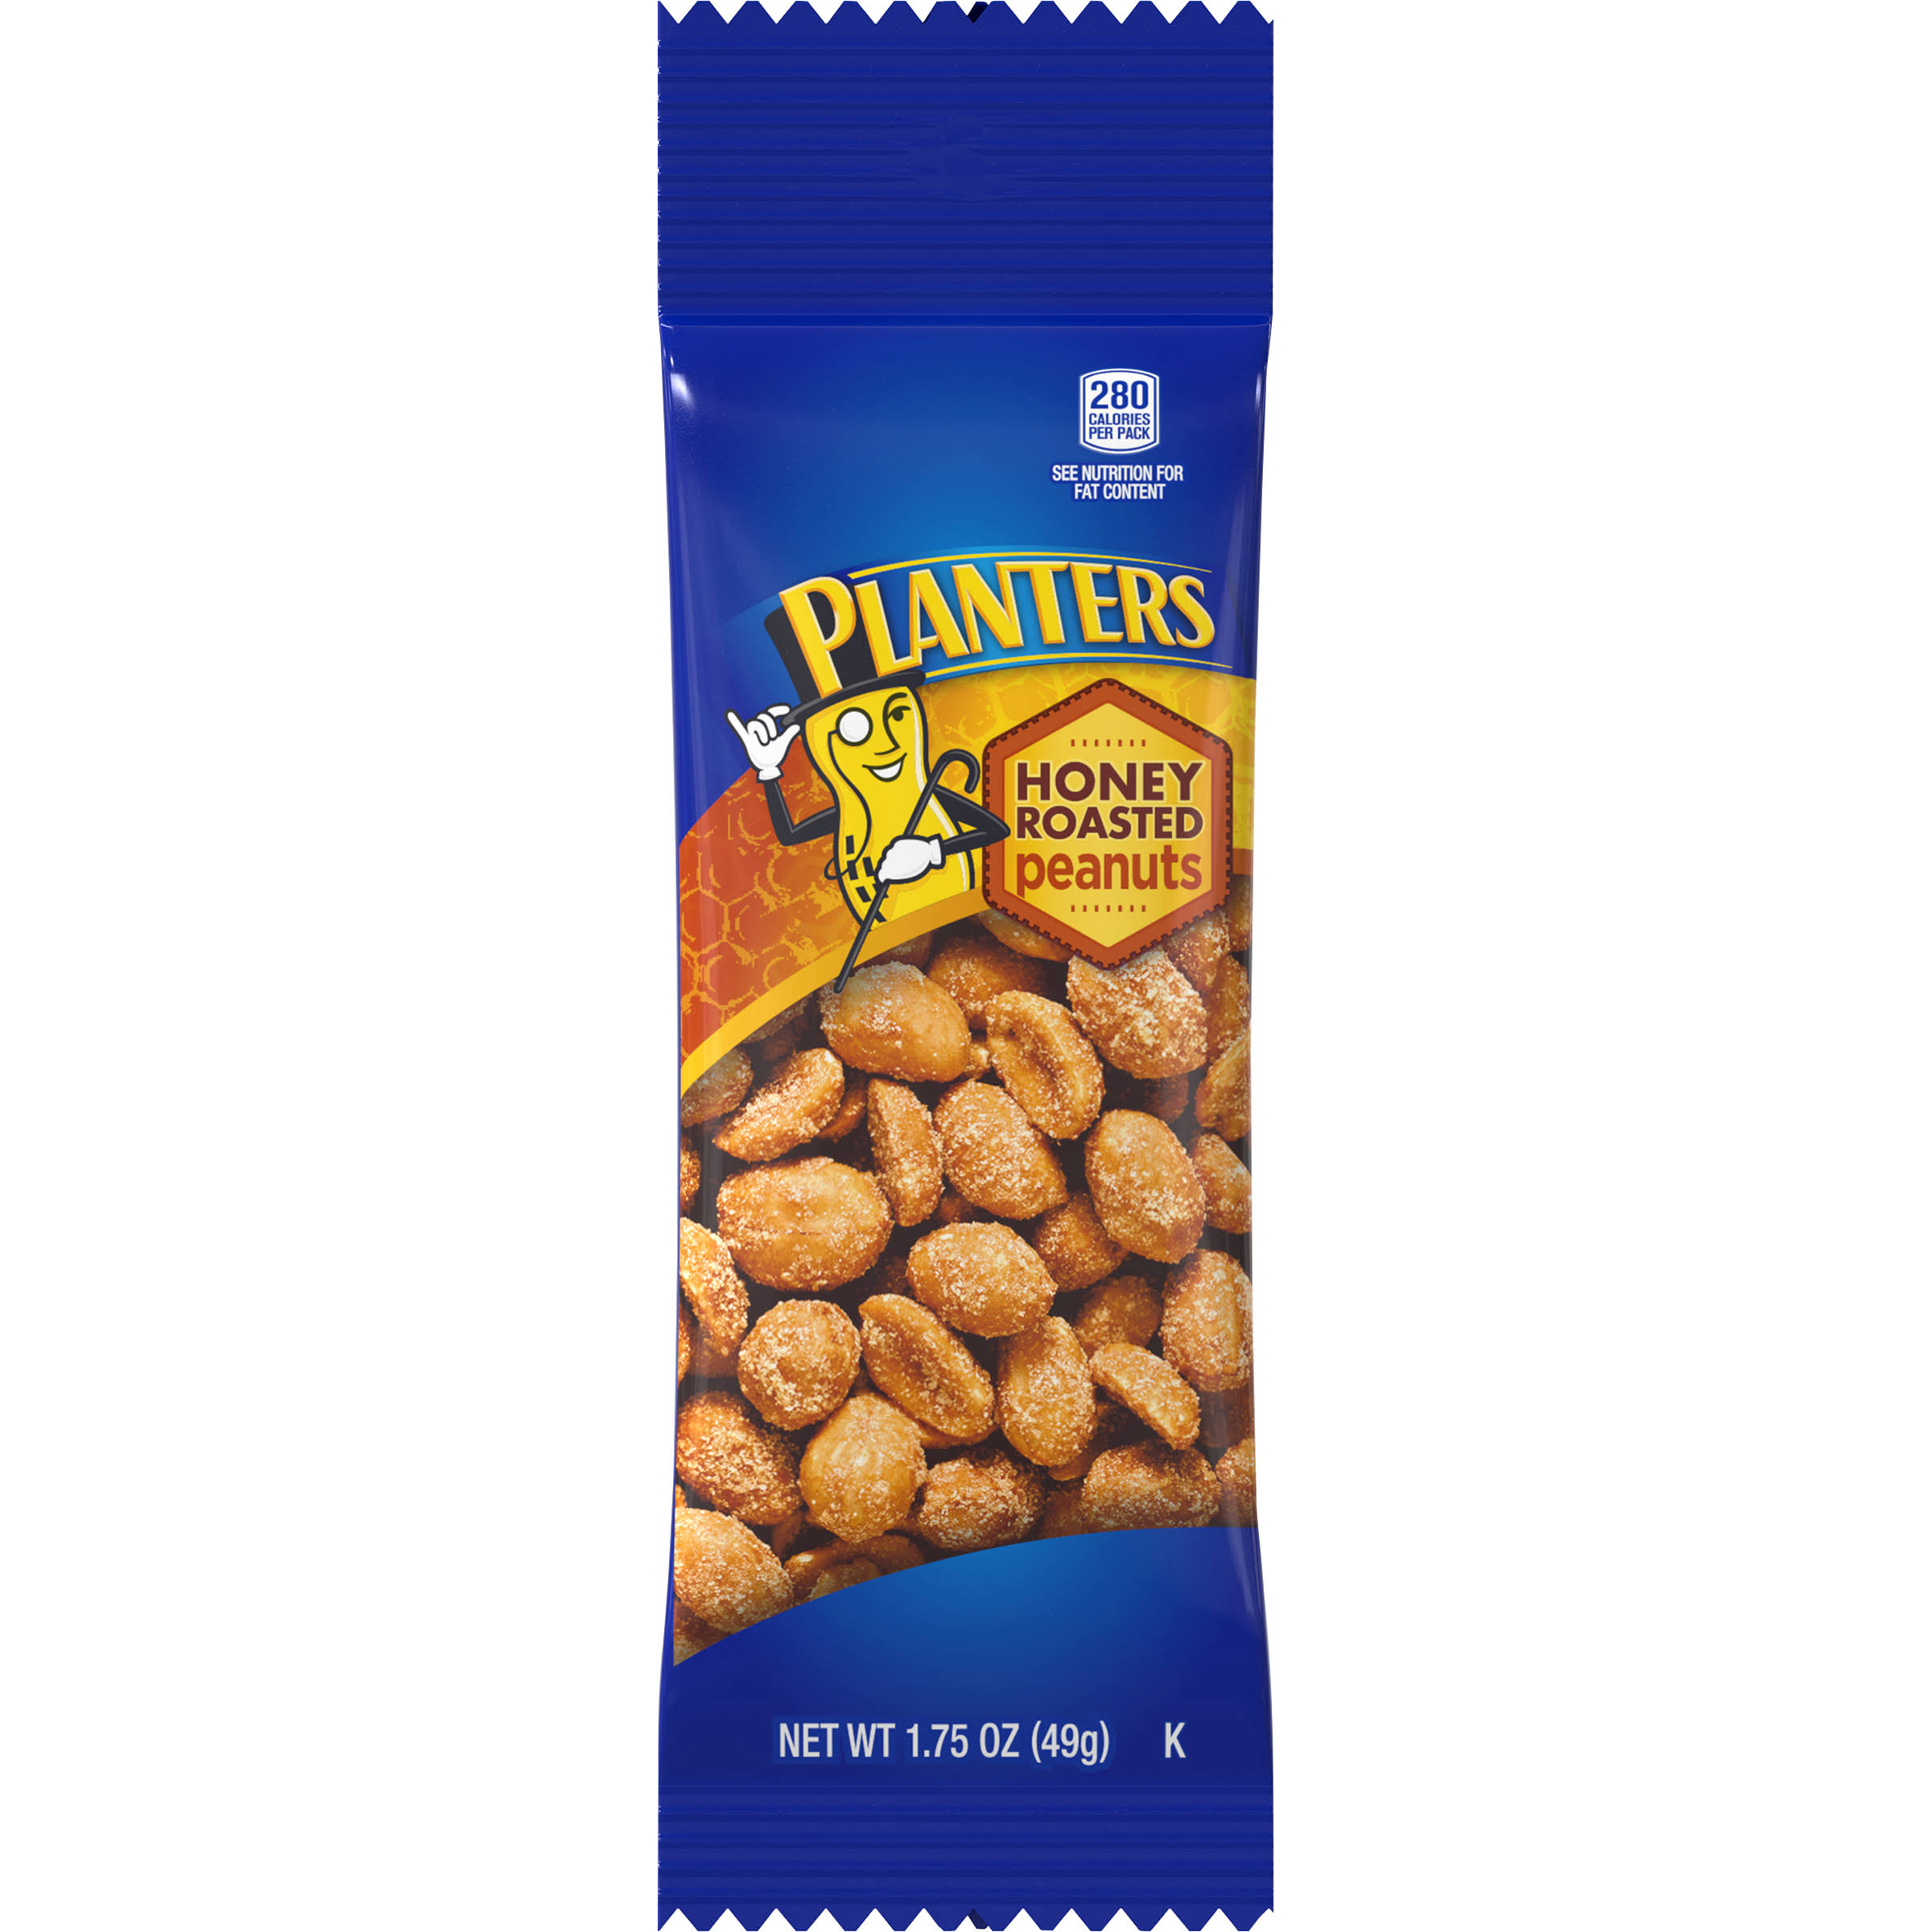 Planters Peanuts - Honey Roasted